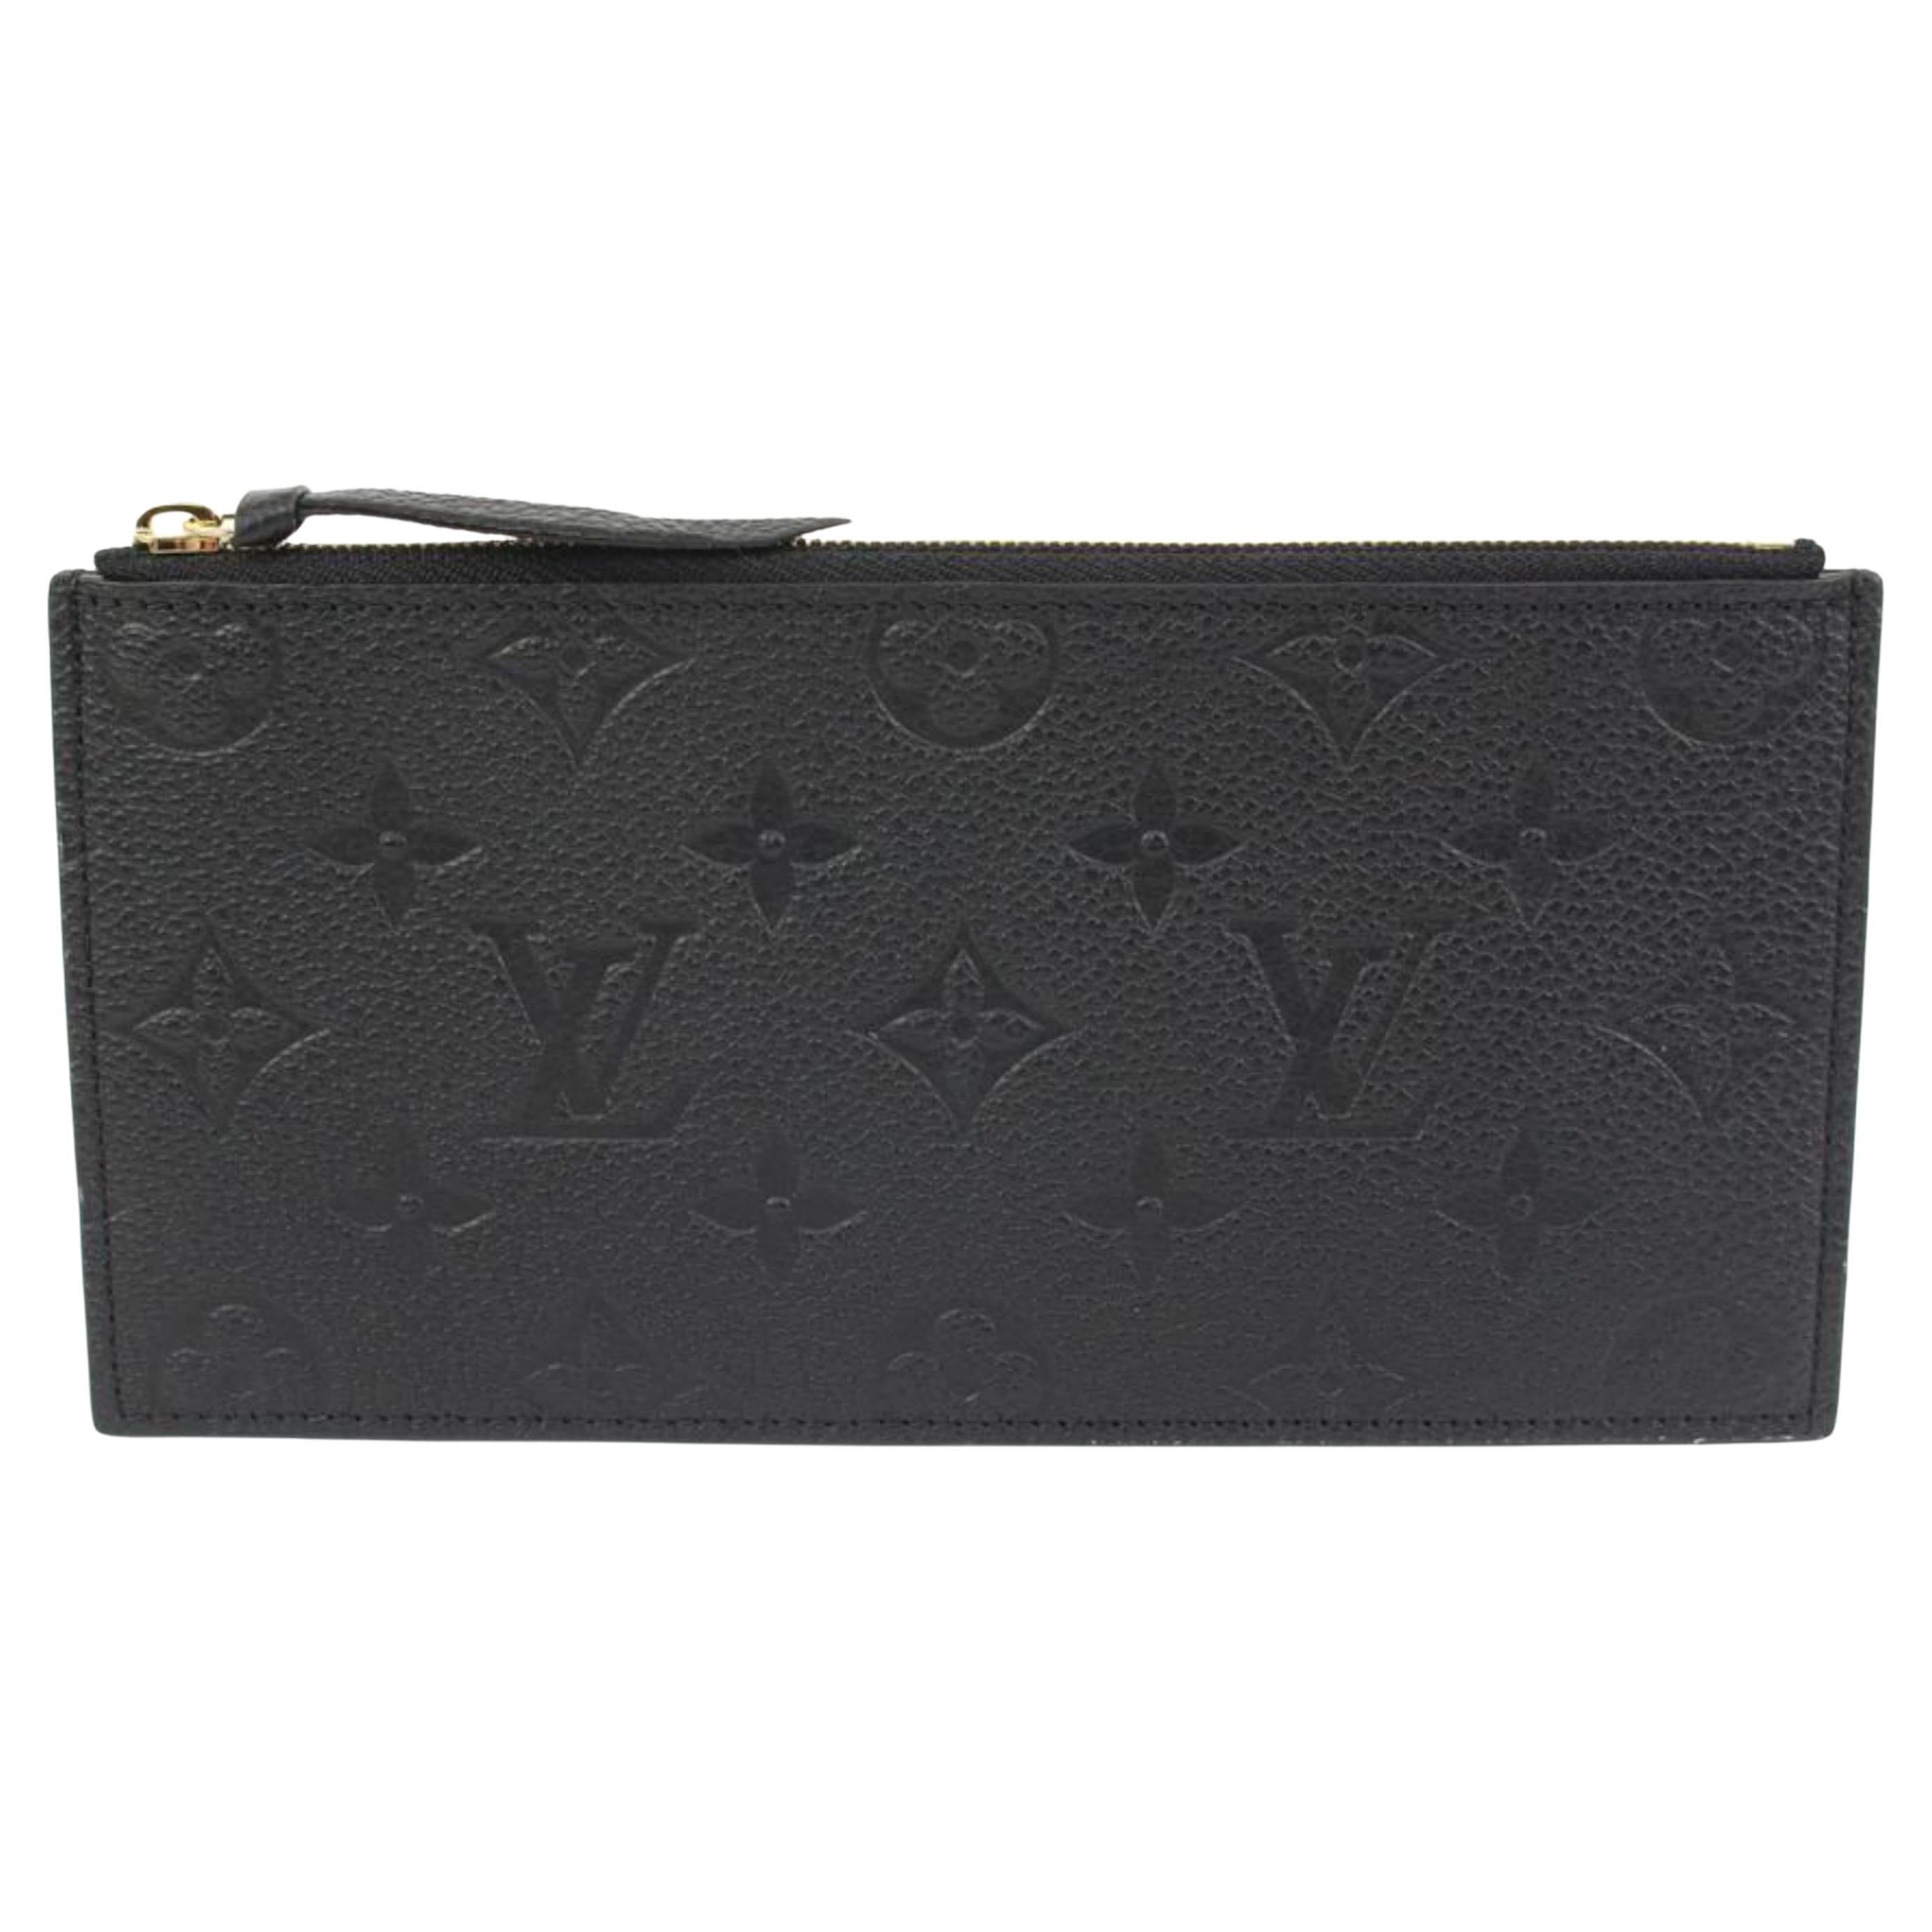 Louis Vuitton Black Leather Monogram Empreinte Zip Pouch Felicie Insert 59lk322s